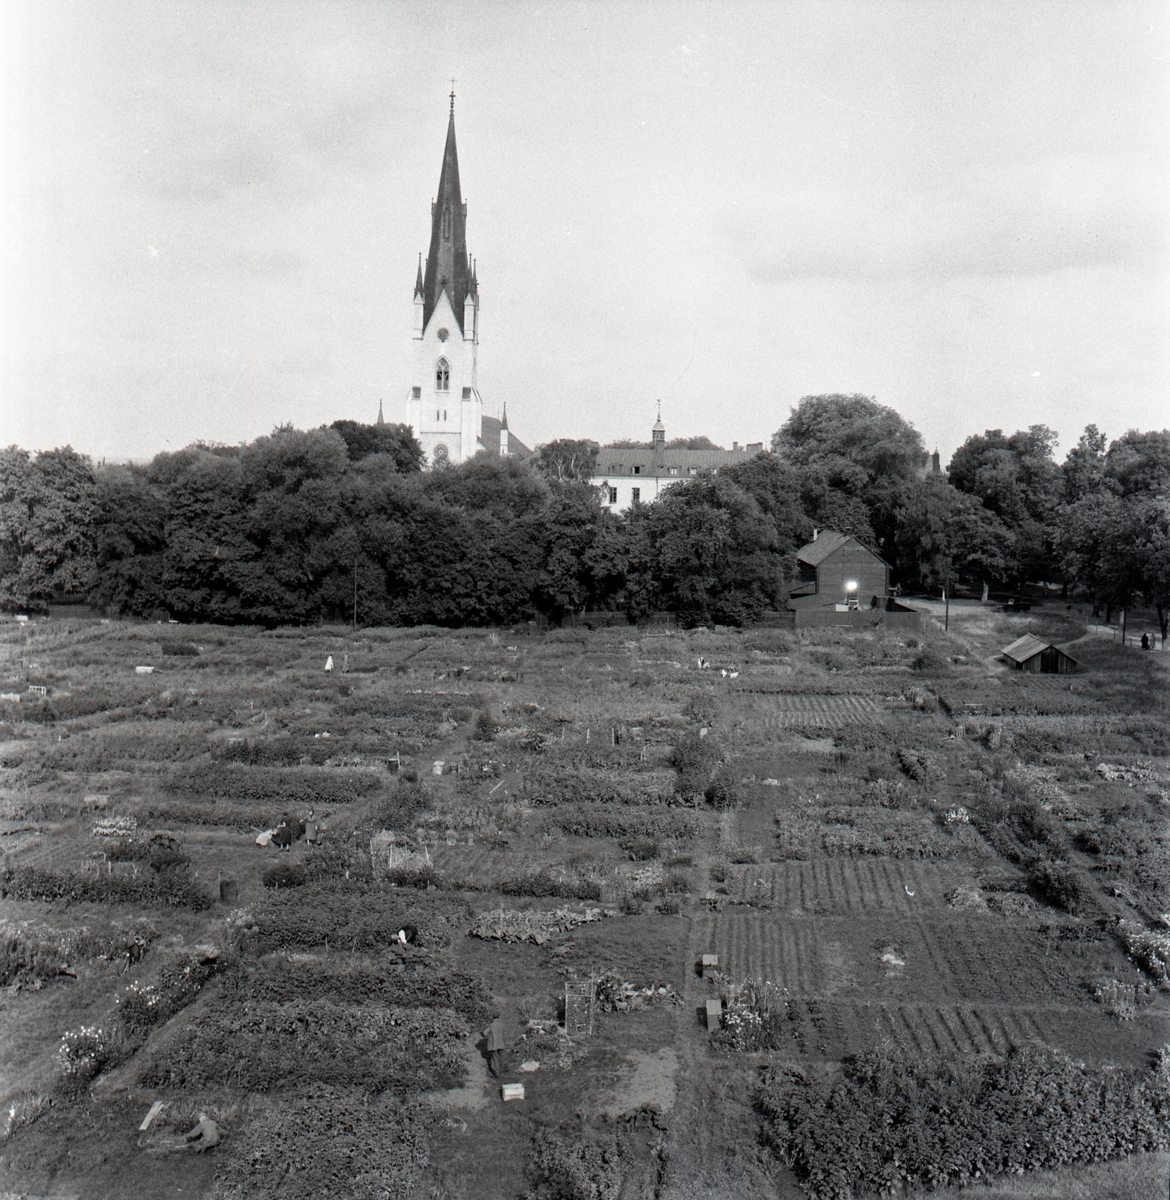 Koloniområdet på Ålebrunnslyckorna, där det långa landstatshuset uppförts.

Vasagärdet, Domkyrkan syns i bakgrunden samt t.h. skymtas slottet. Längst t.v. i bild syns Vasastaden.